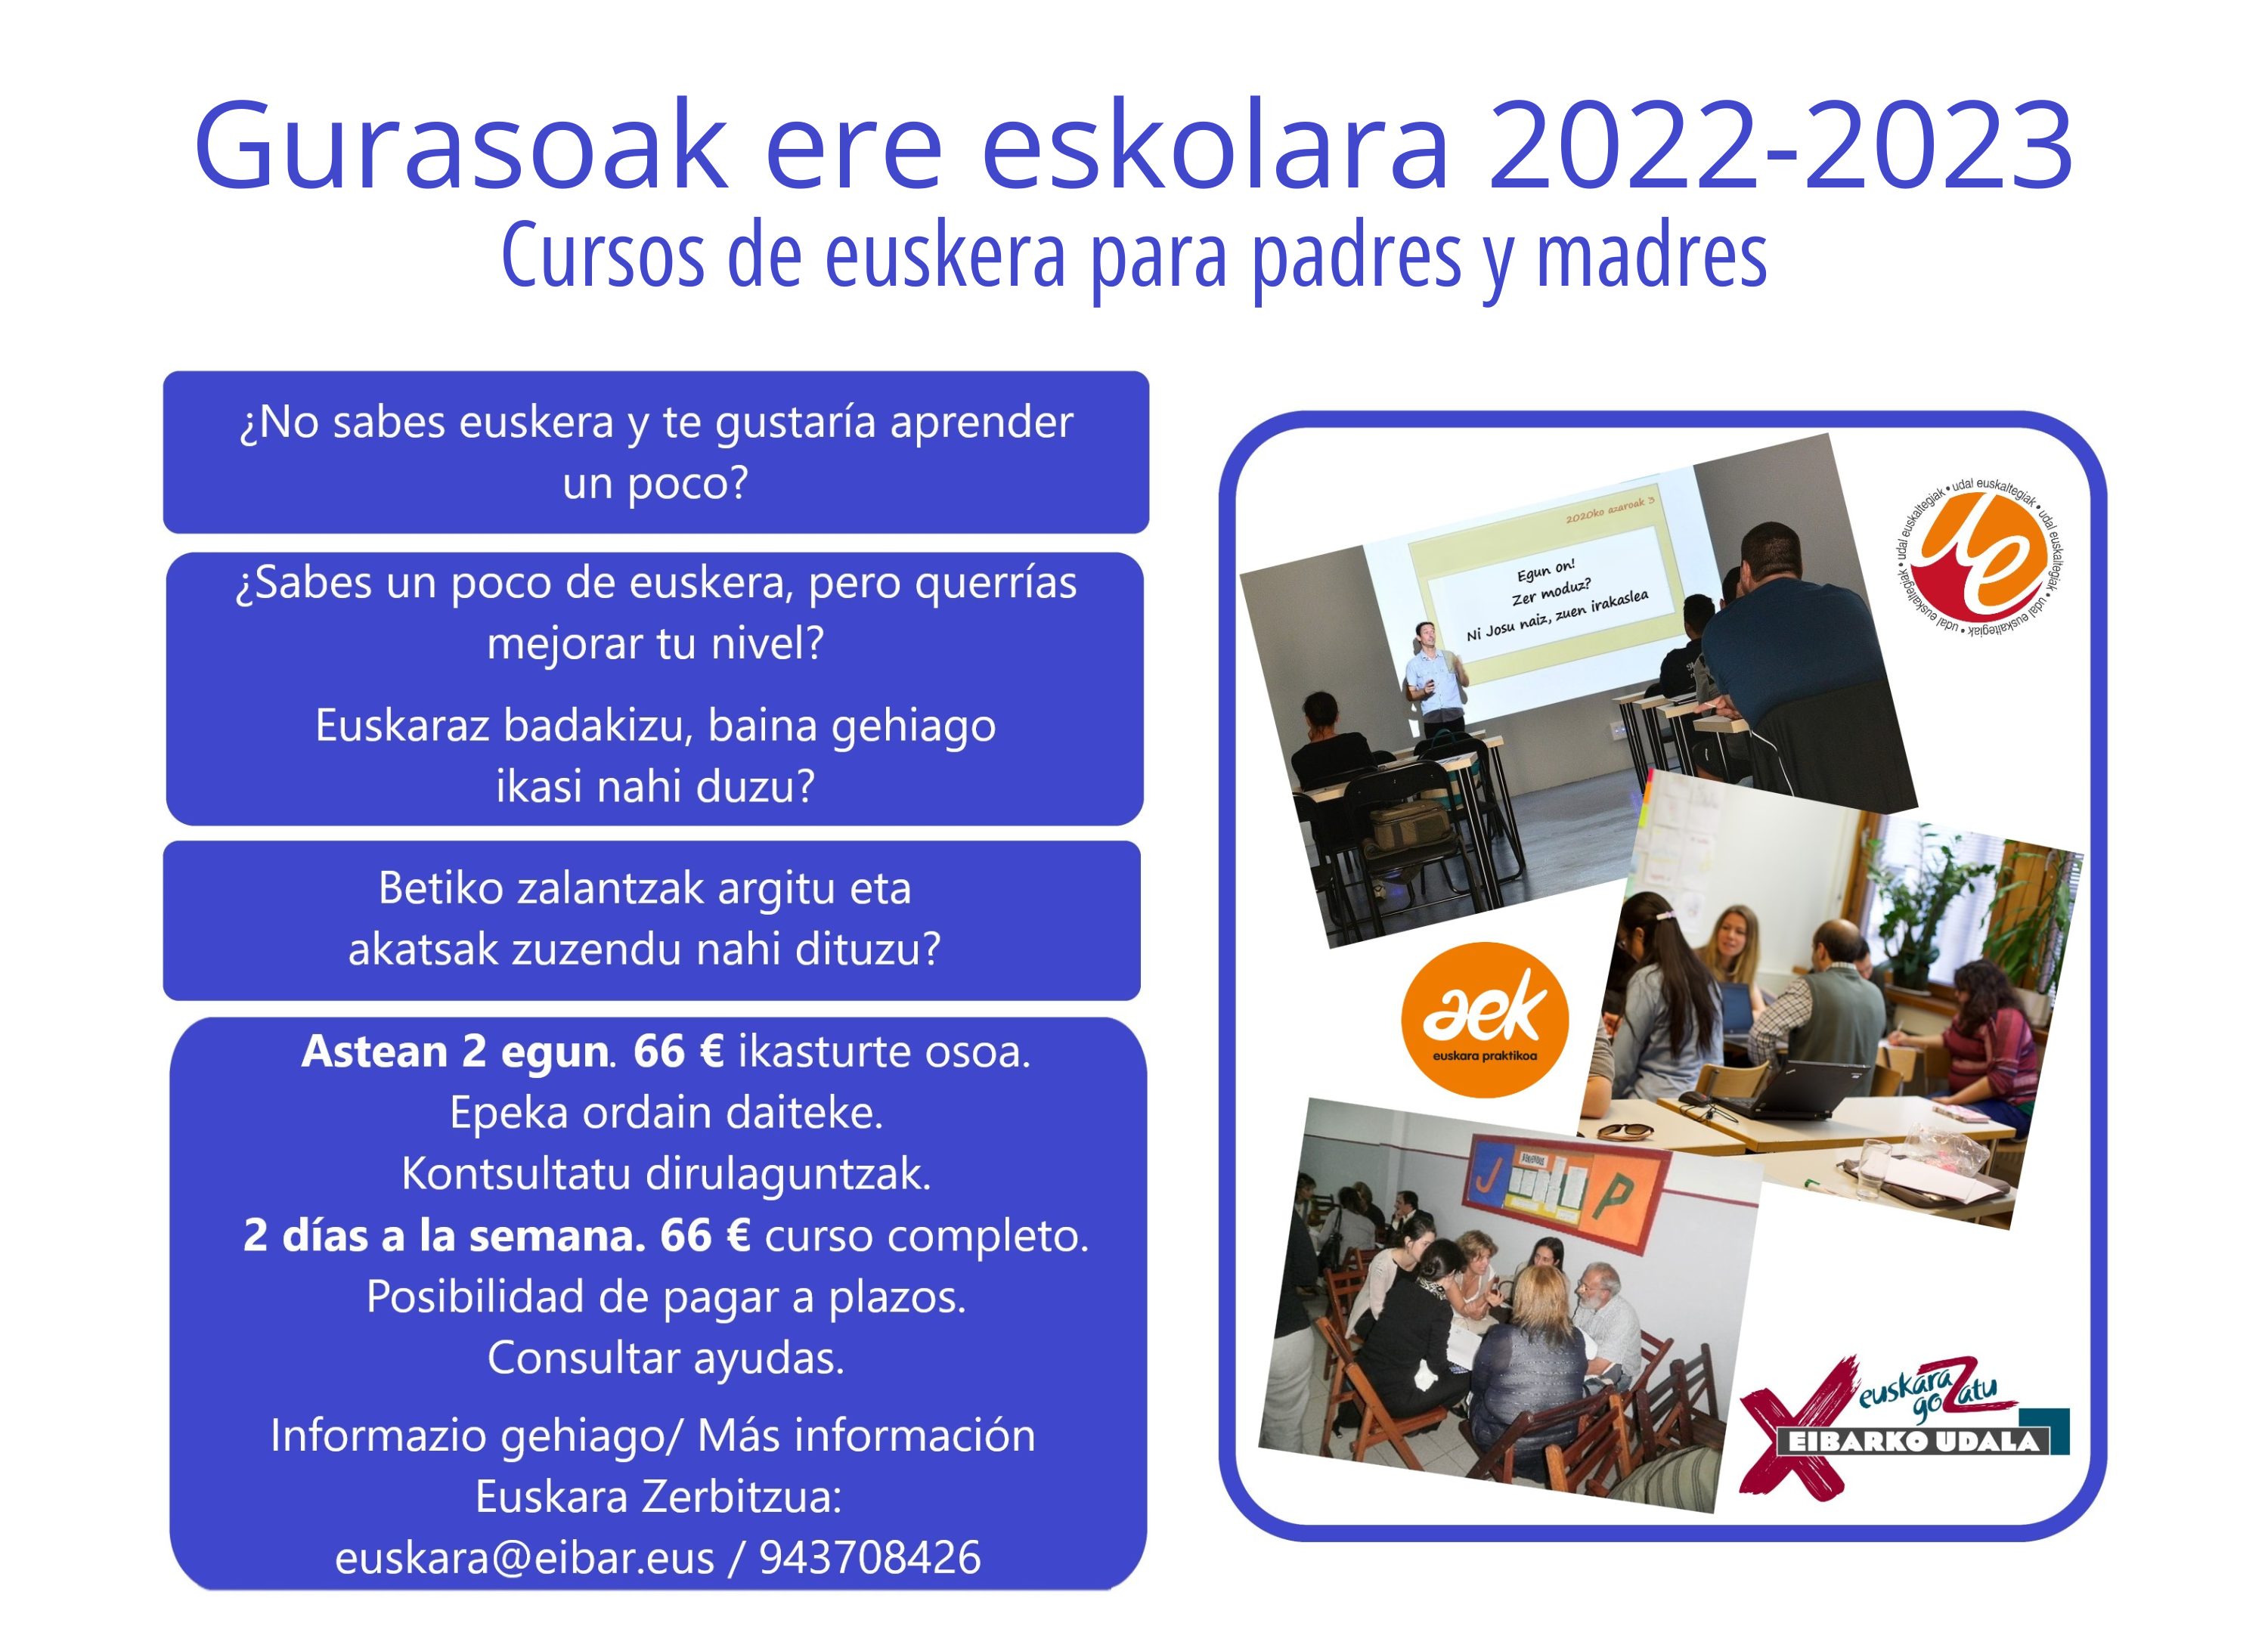 Abierto el plazo de inscripción para los cursos de euskera "Gurasoak ere eskolara"